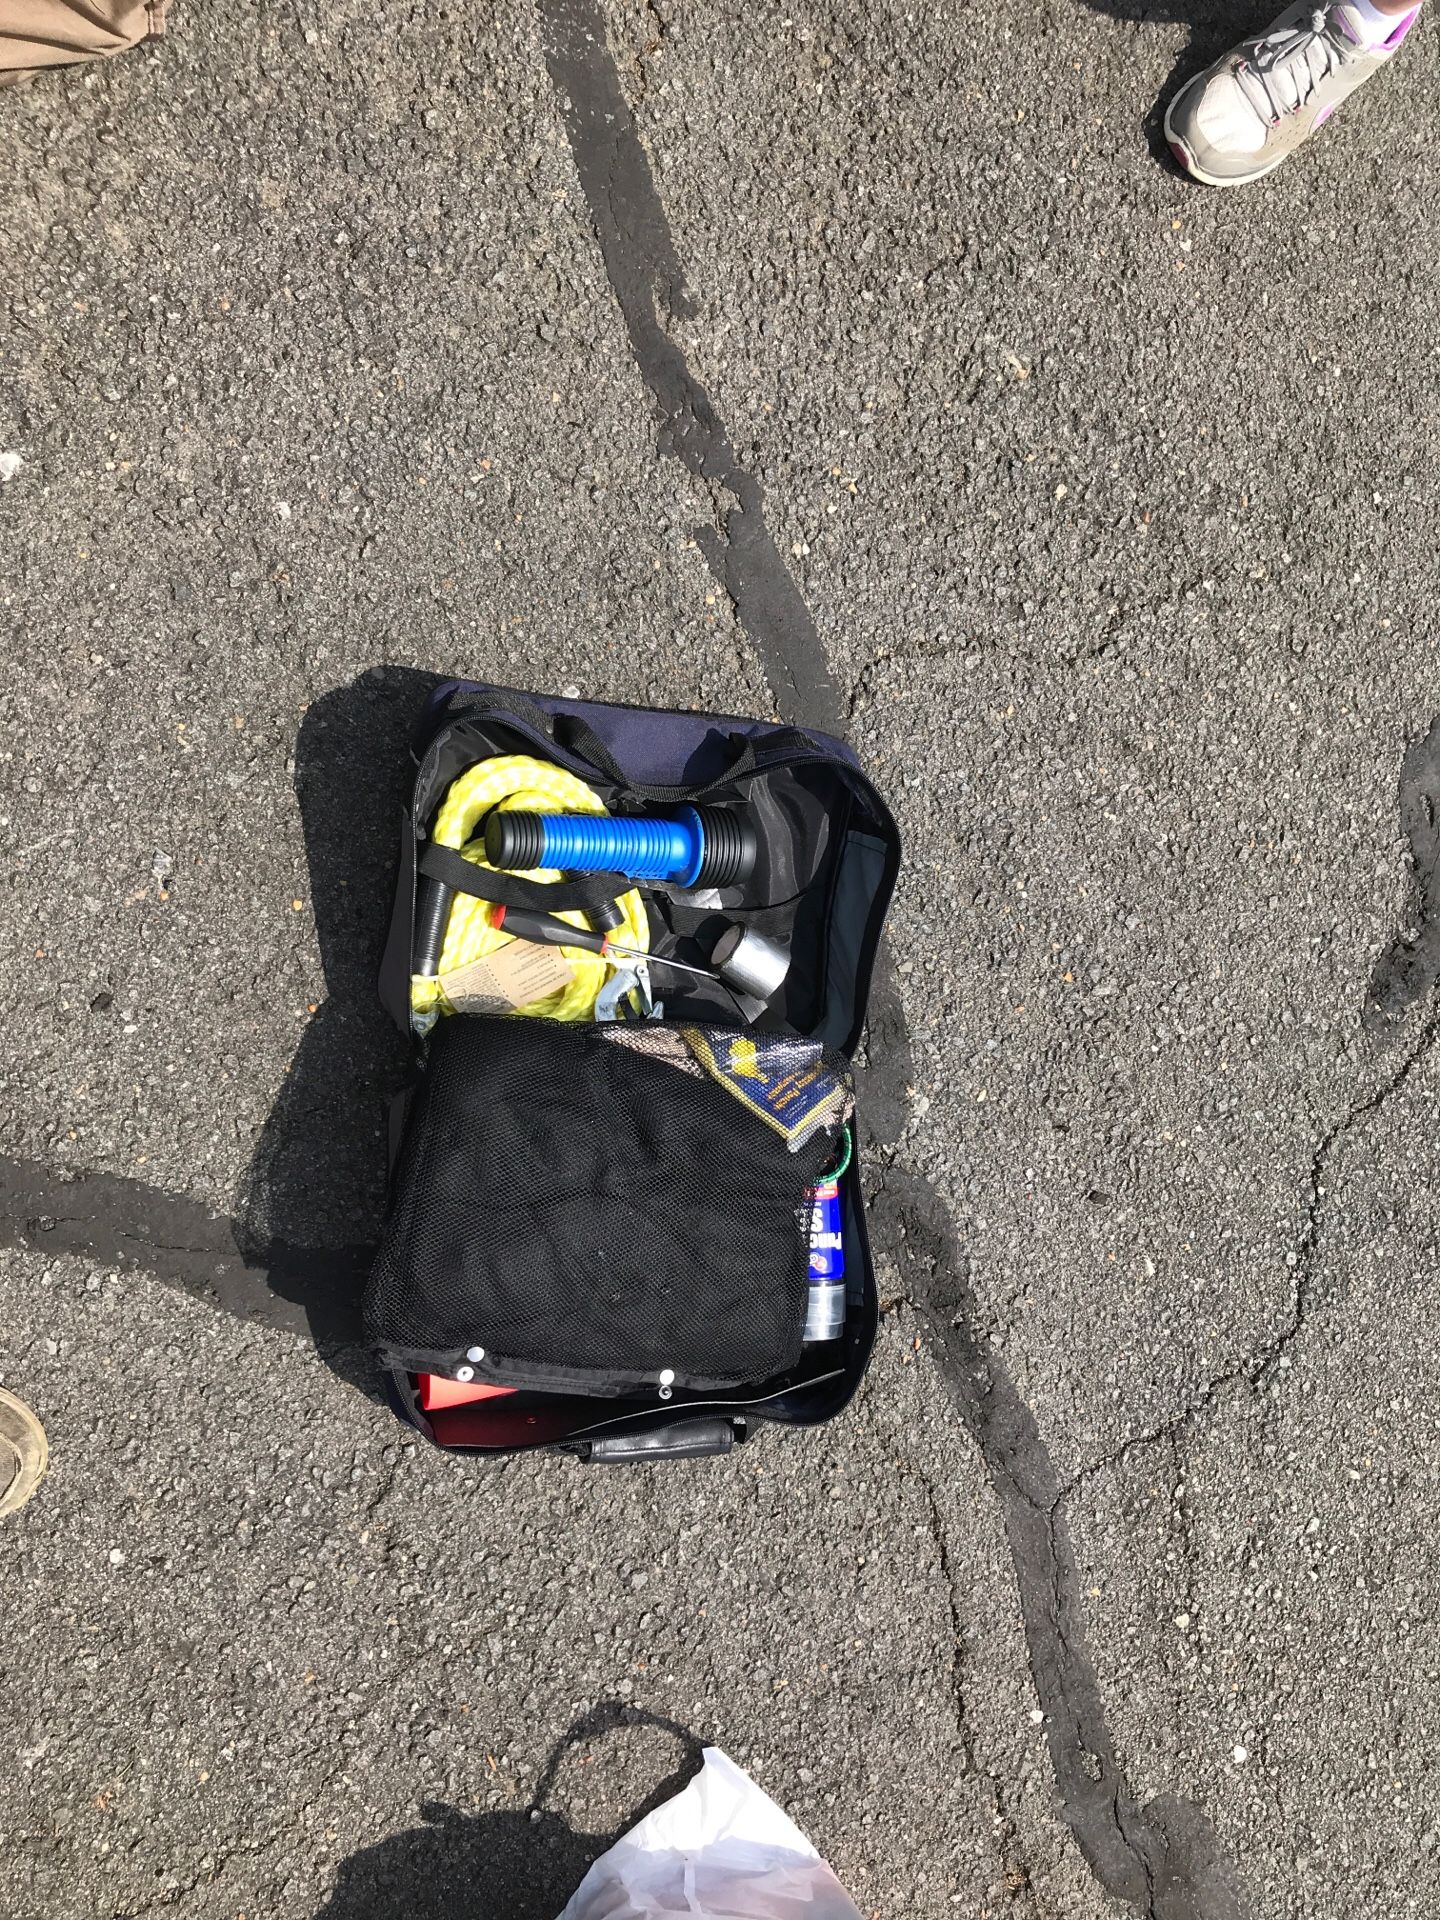 Road side emergency kit